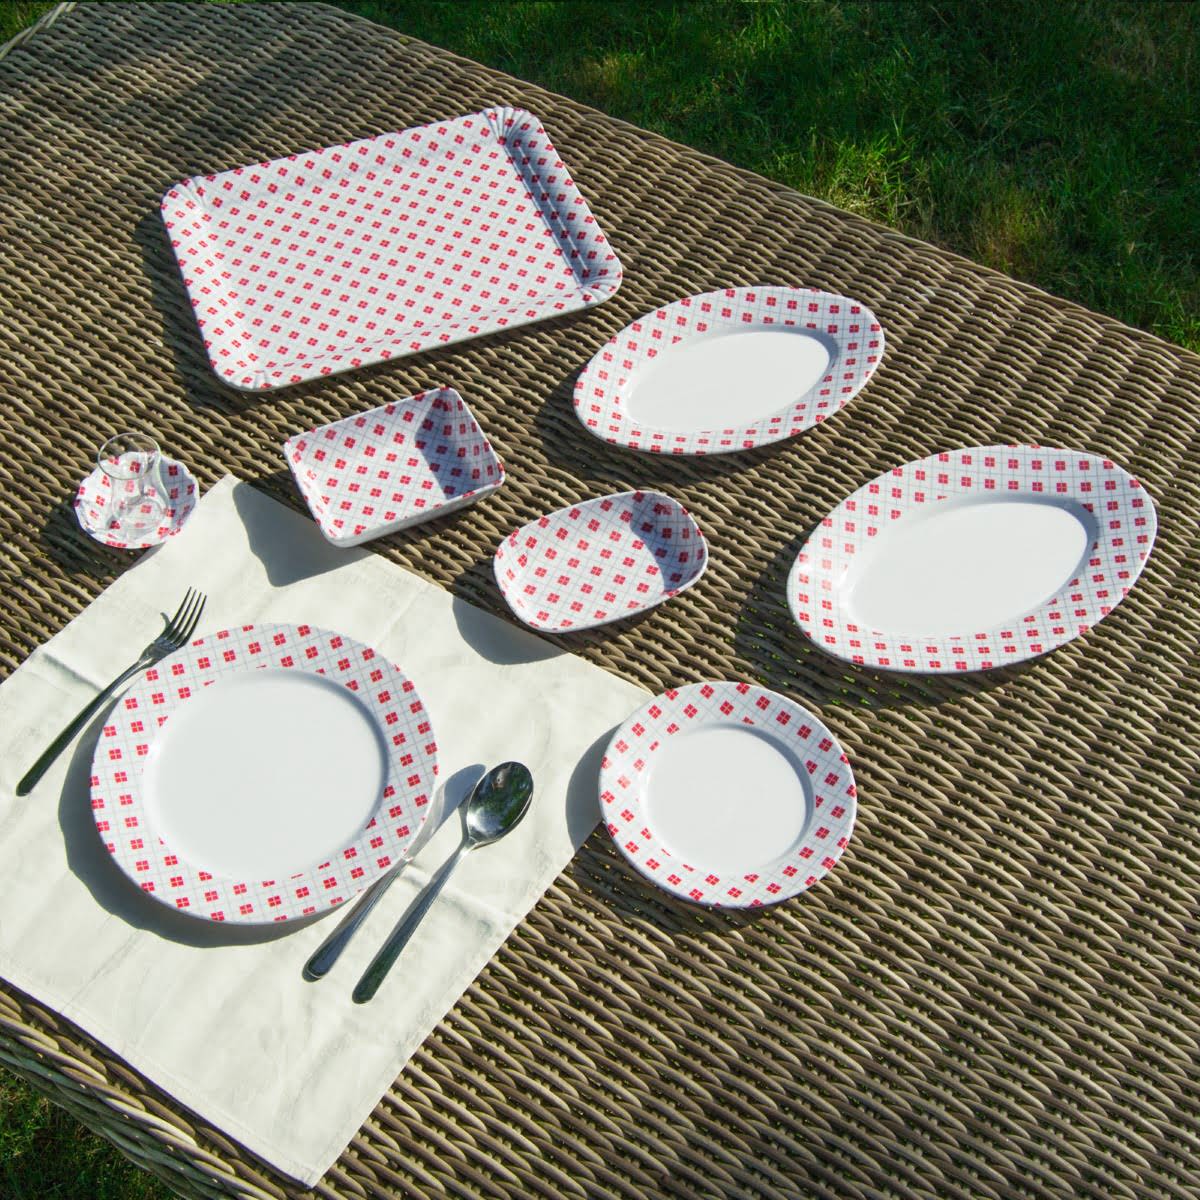 8 kişilik 32 parça melamin piknik seti kolay taşınır kolay temizlenir ve kullanılır